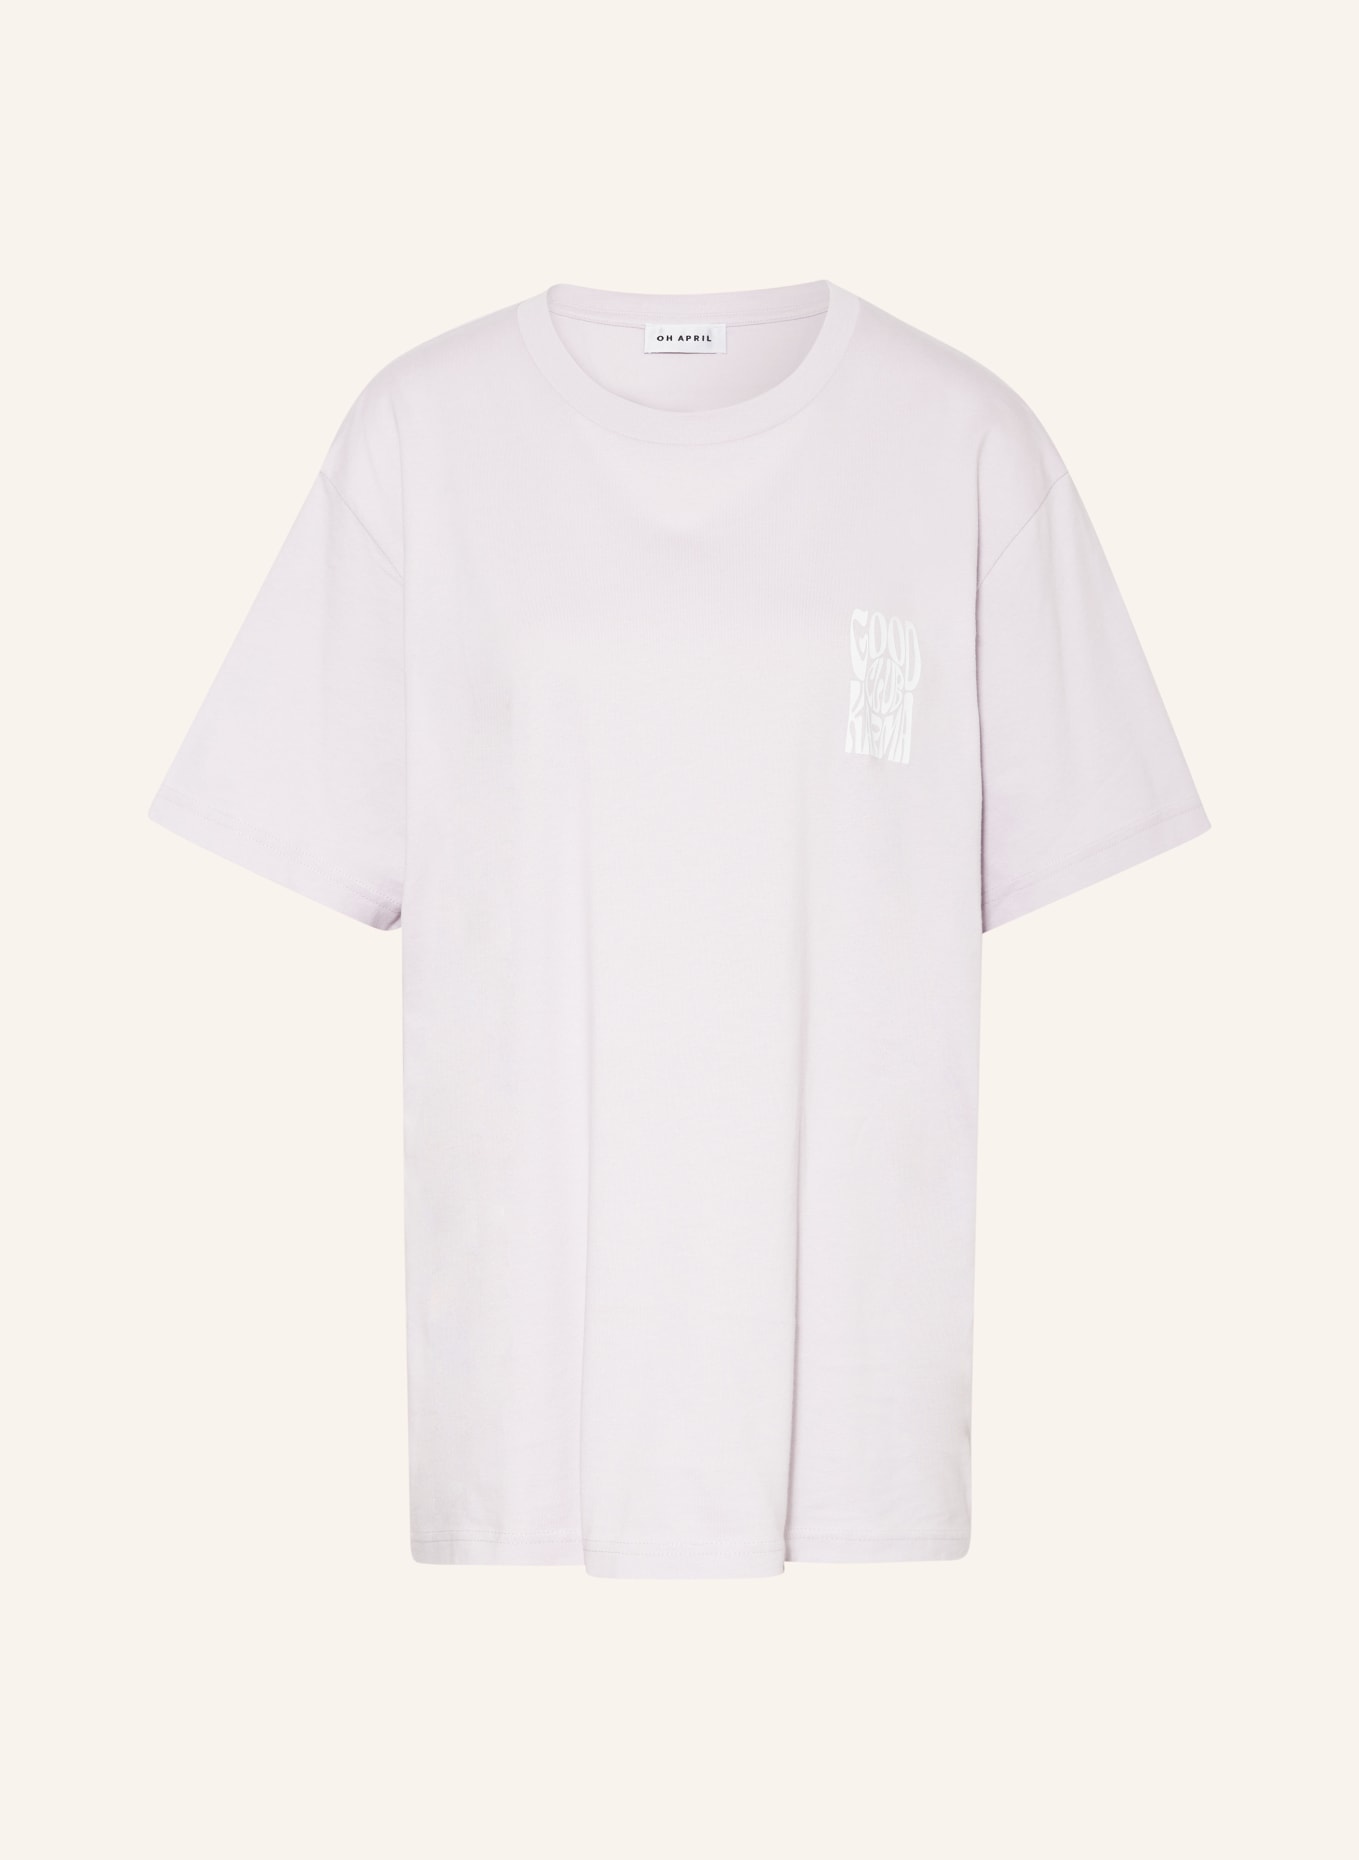 OH APRIL T-shirt BOYFRIEND, Color: LIGHT PURPLE (Image 1)